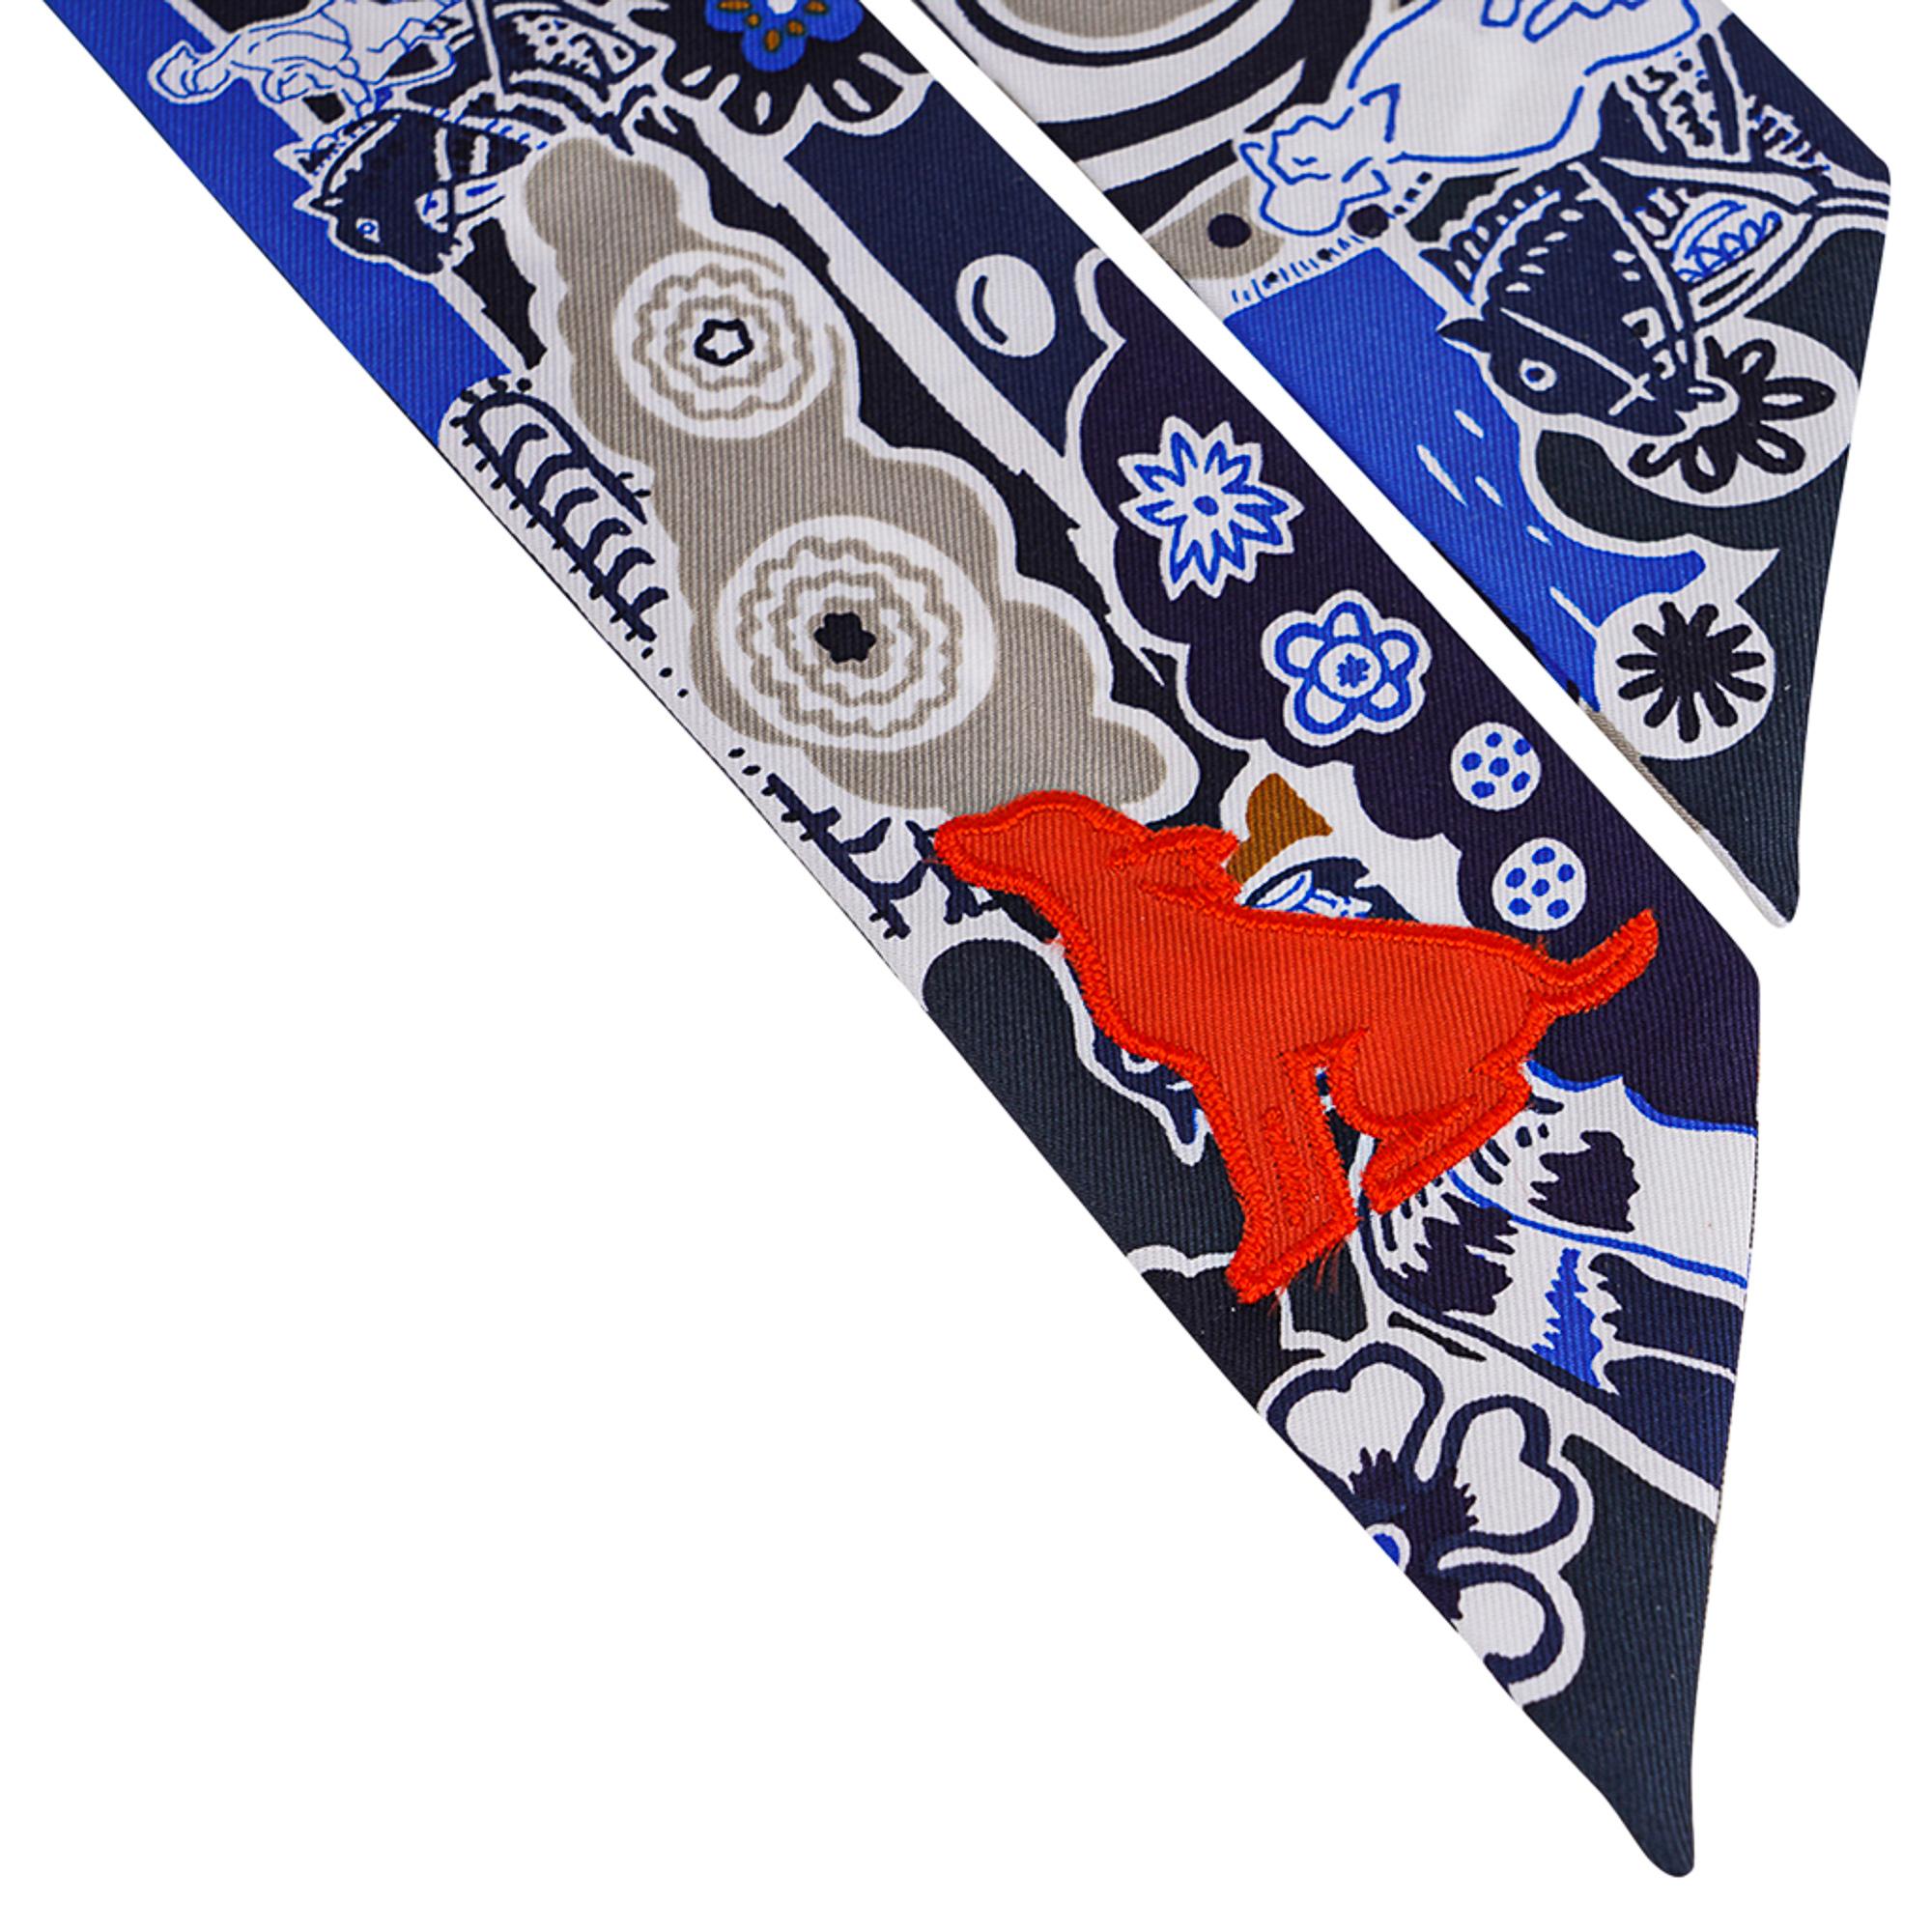 Mightychic propose un Twilly Hermès édition limitée avec autocollant Bingata en Marin, Tabac, Bleu Vif.
Un écusson en forme de chien assis en soie orange ajoute un peu de fantaisie.
Cousu au point de satin.
Cet accessoire emblématique d'Icone peut